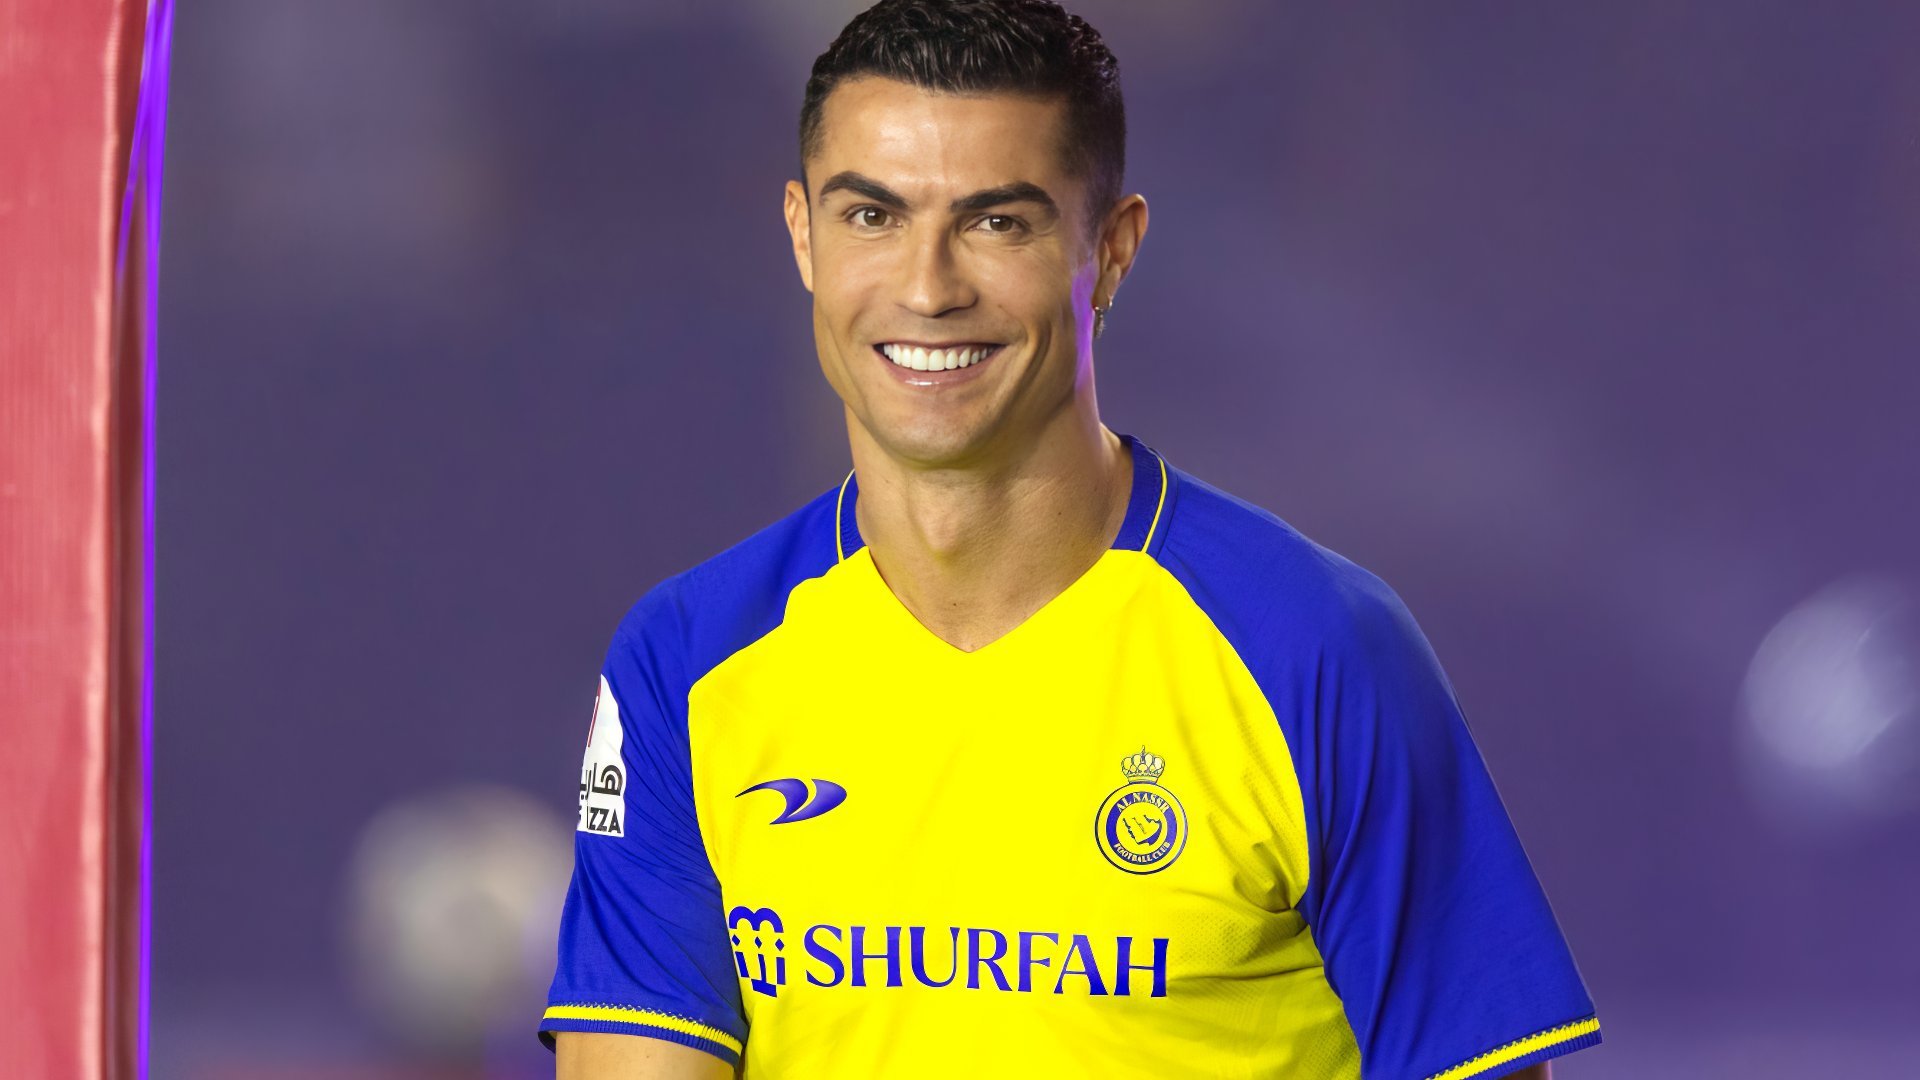 Fondos de pantalla Cristiano Ronaldo en Al-Nassr